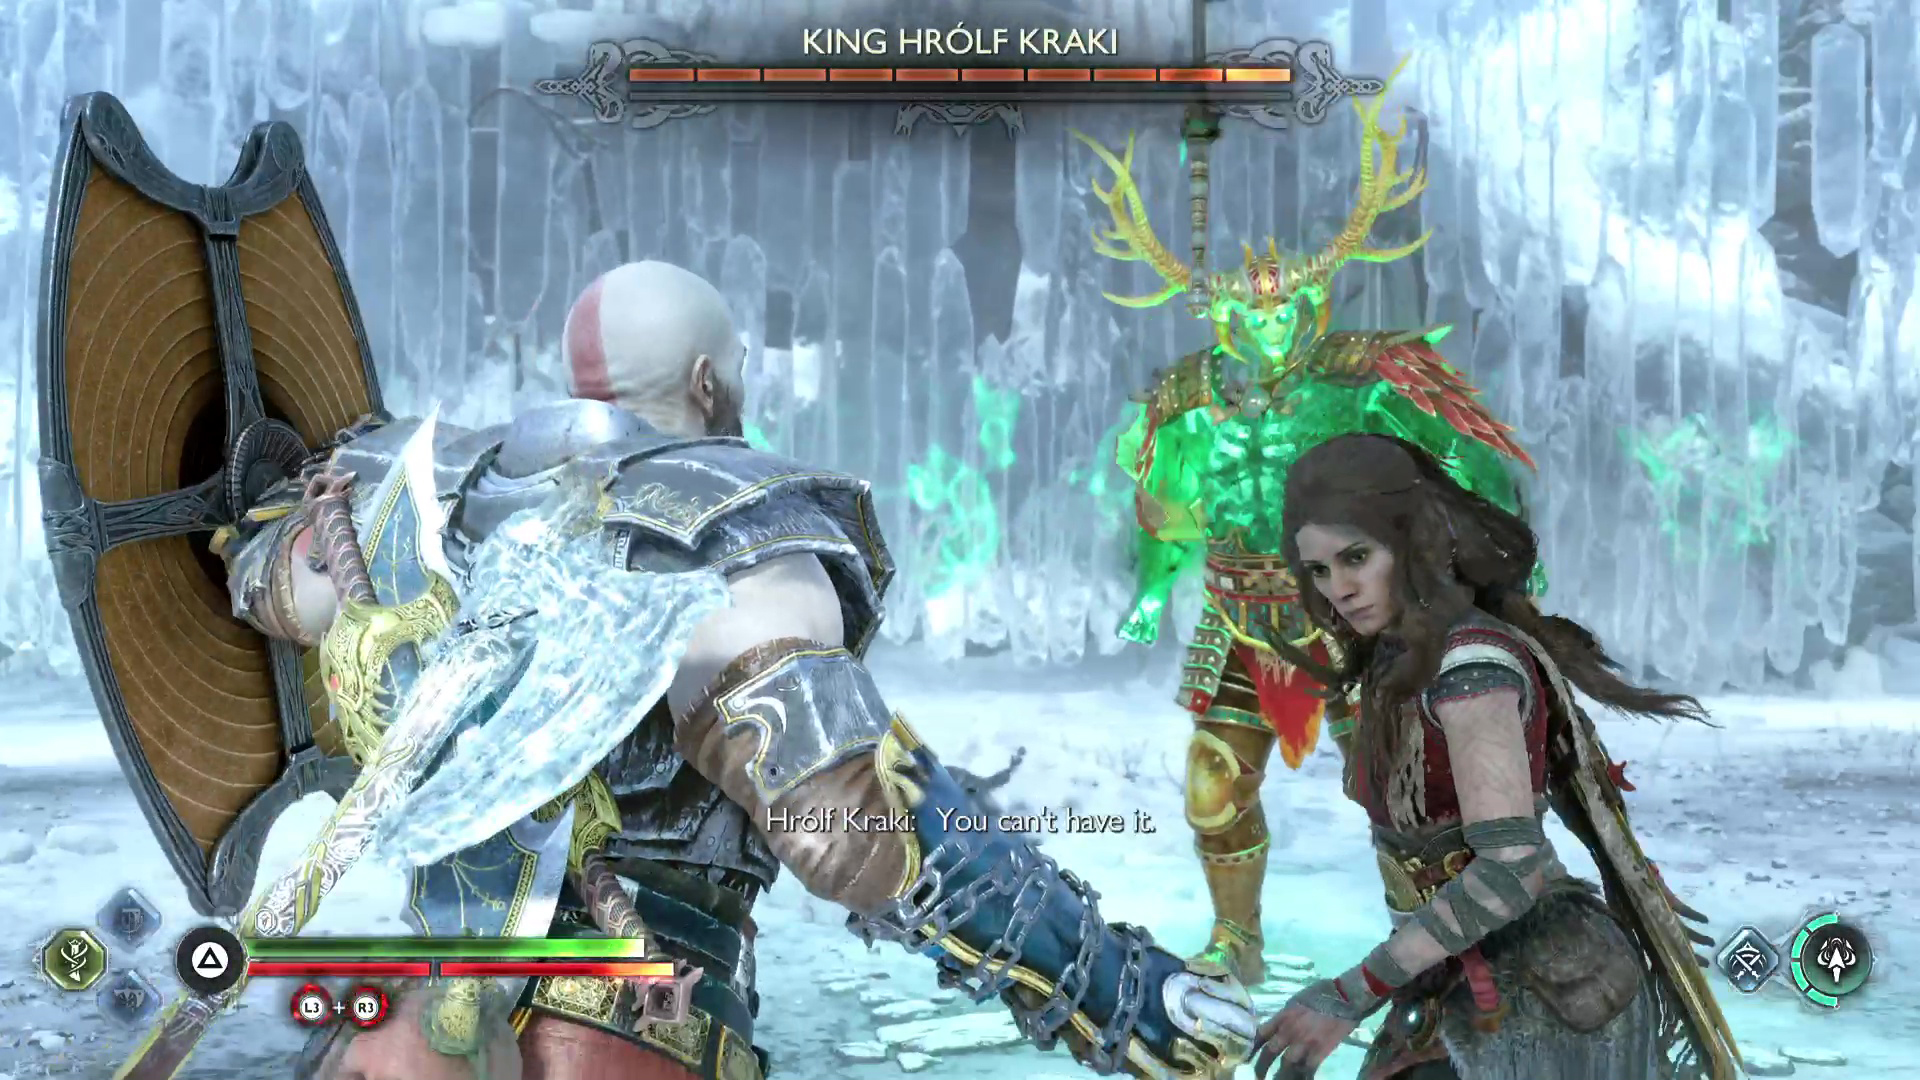 Kratos and Freya face off against the Berserker King, King Hrolf Kraki.